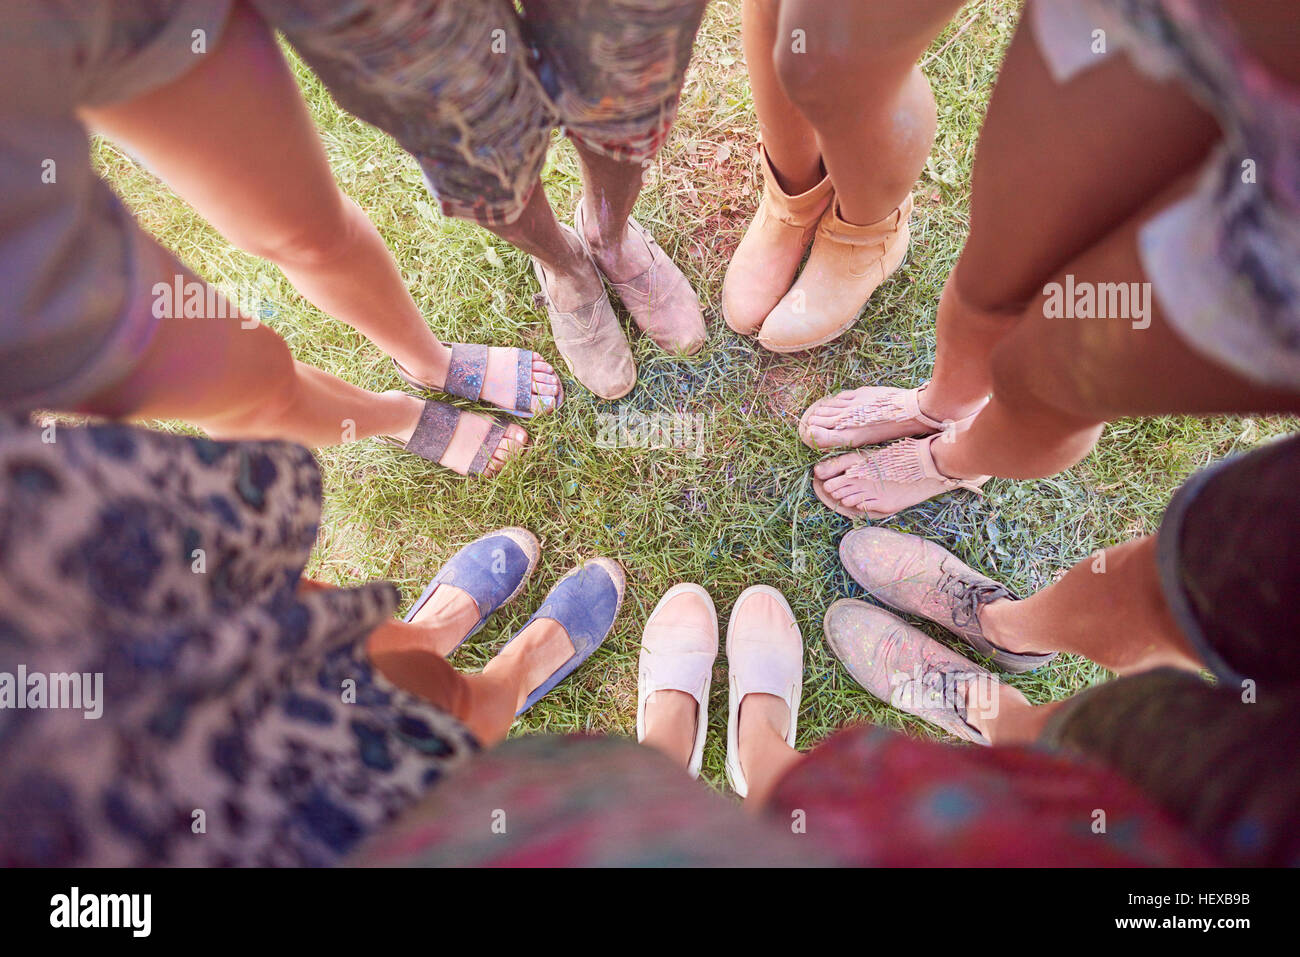 Gruppe von Freunden am Festival, bedeckt in bunten Pulverlack, stehen im Kreis, erhöhten Blick auf Füße Stockfoto